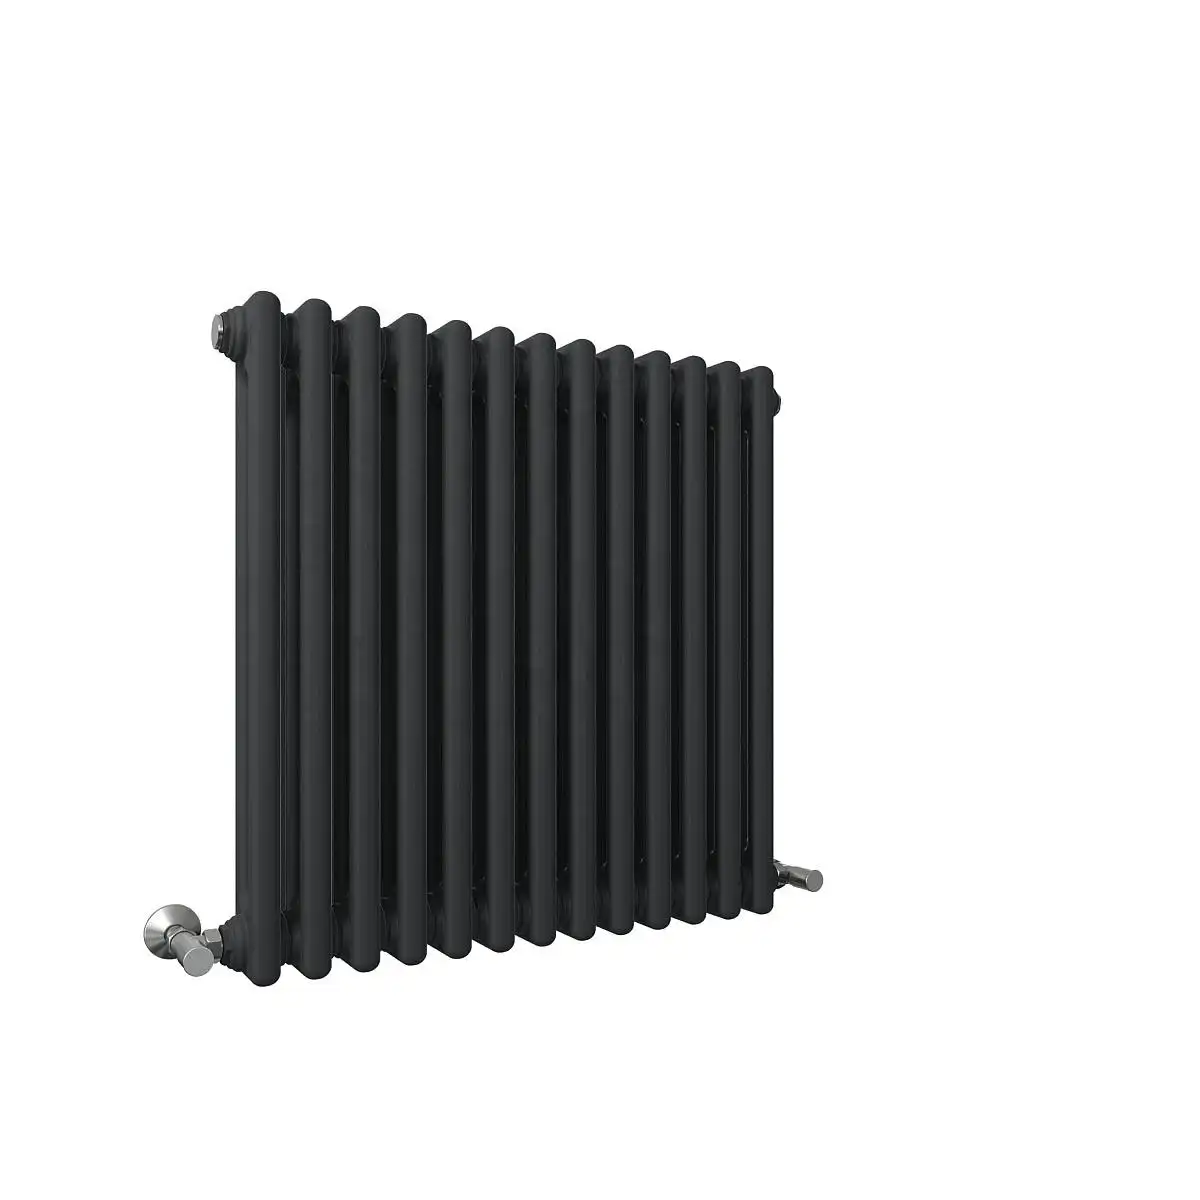 BODE radiatore tradizionale a 2 colonne senza ruggine per riscaldamento centralizzato per sistemi di riscaldamento domestico